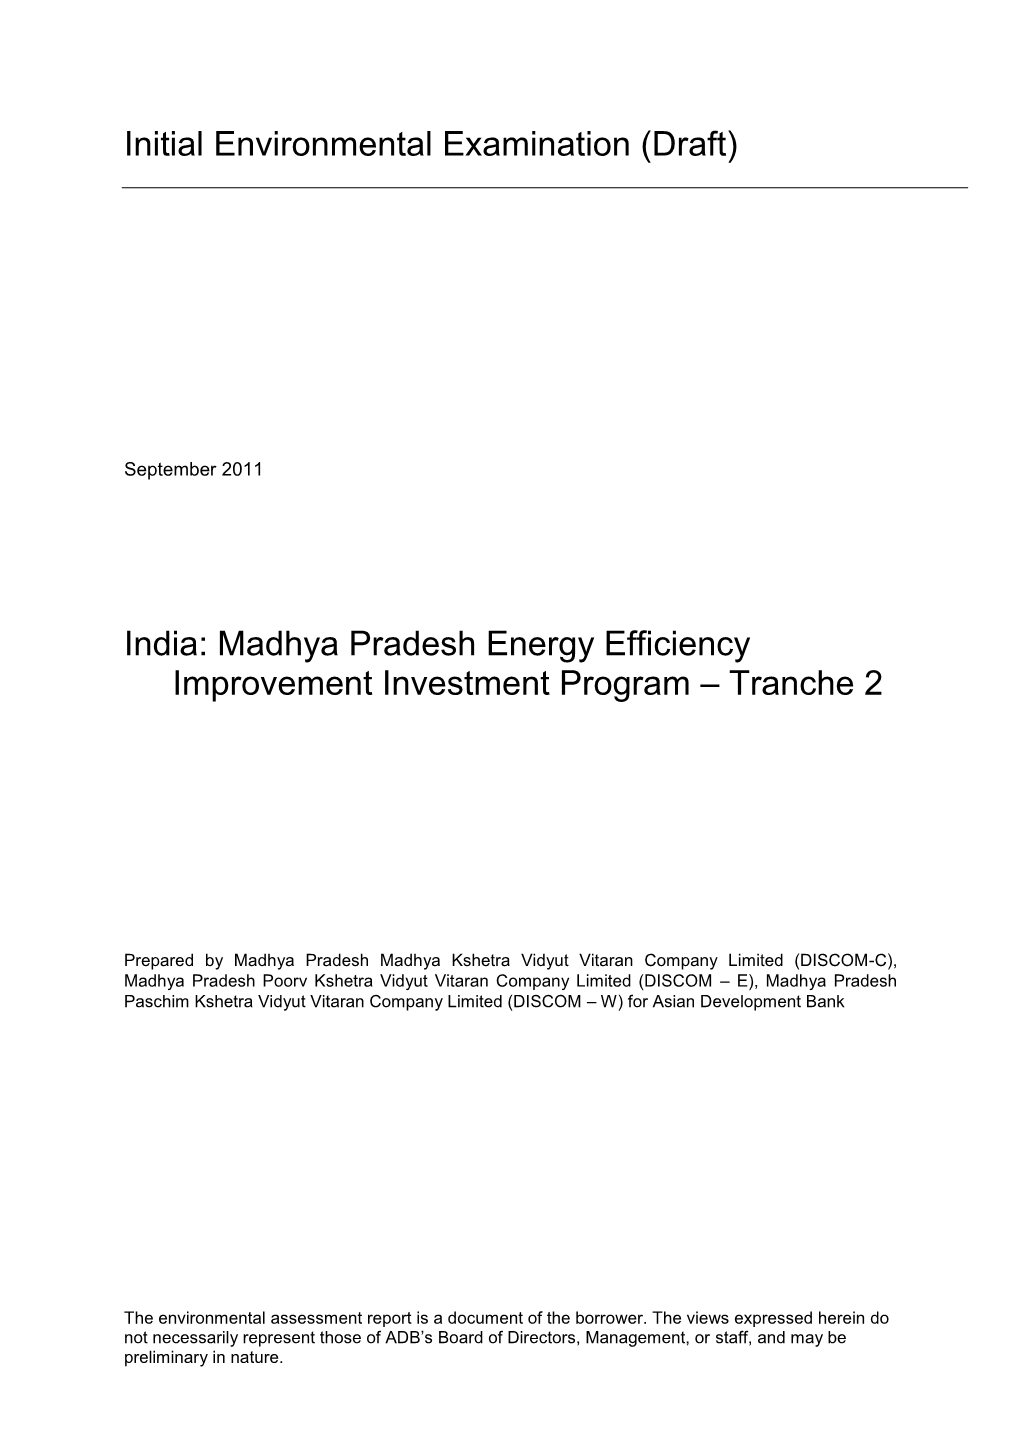 Draft IEE: India: Madhya Pradesh Energy